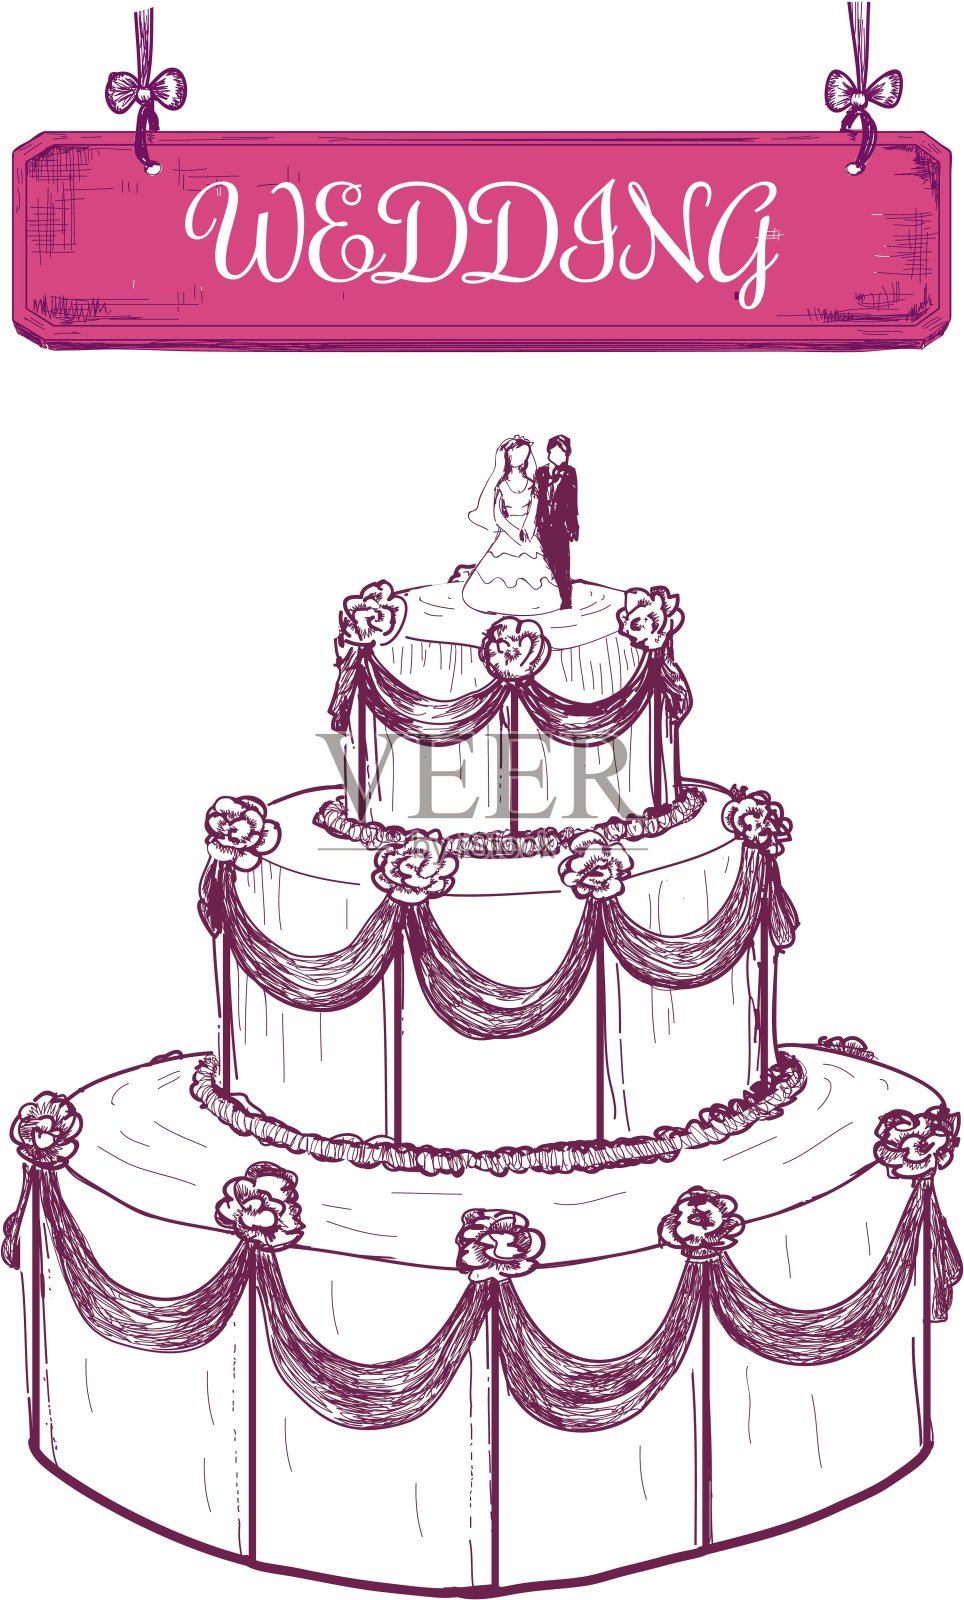 婚礼蛋糕插画图片素材